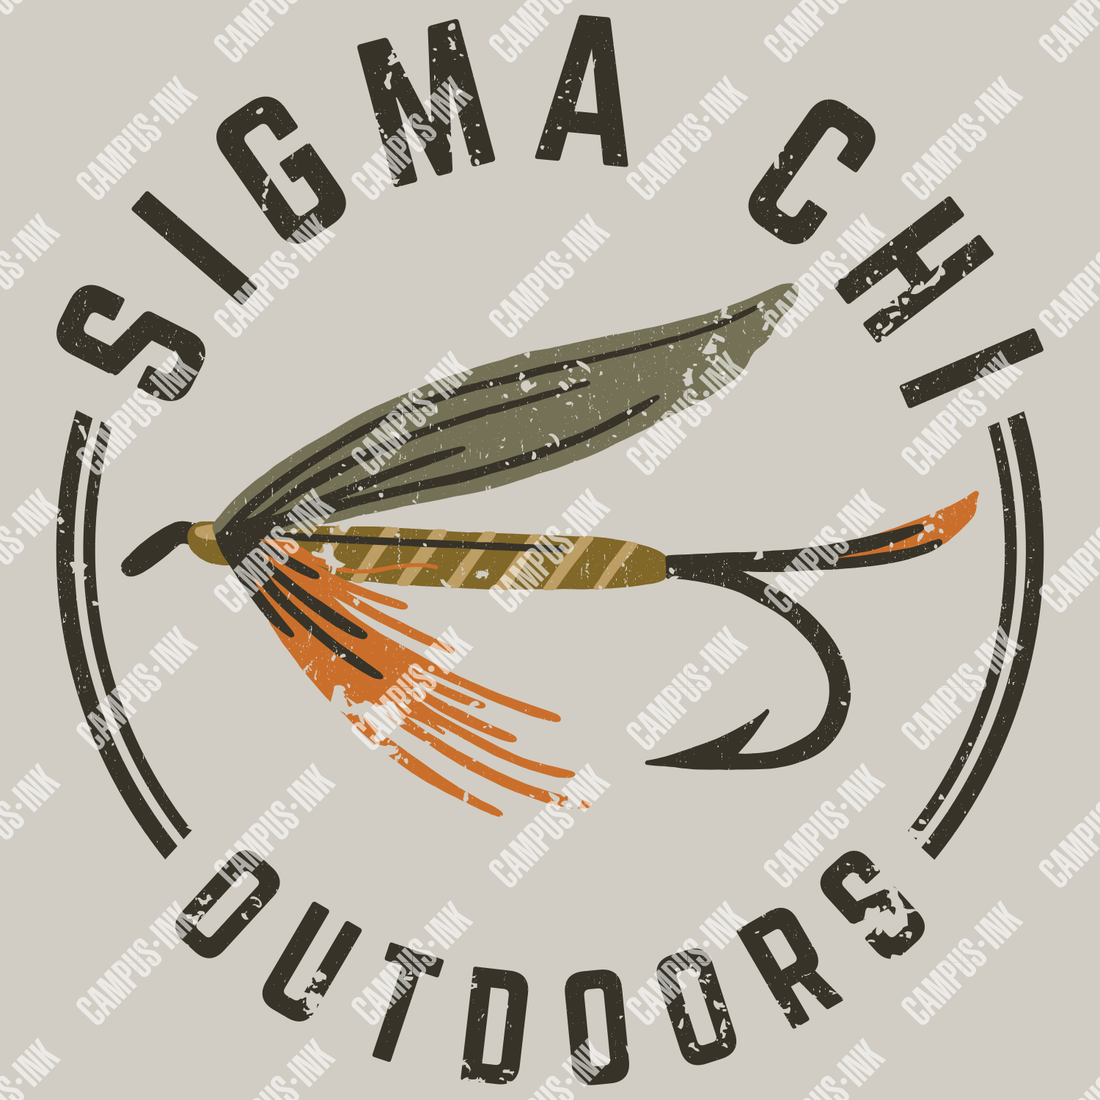  Sigma Chi Fishing Design - Sigma Chi Fraternity